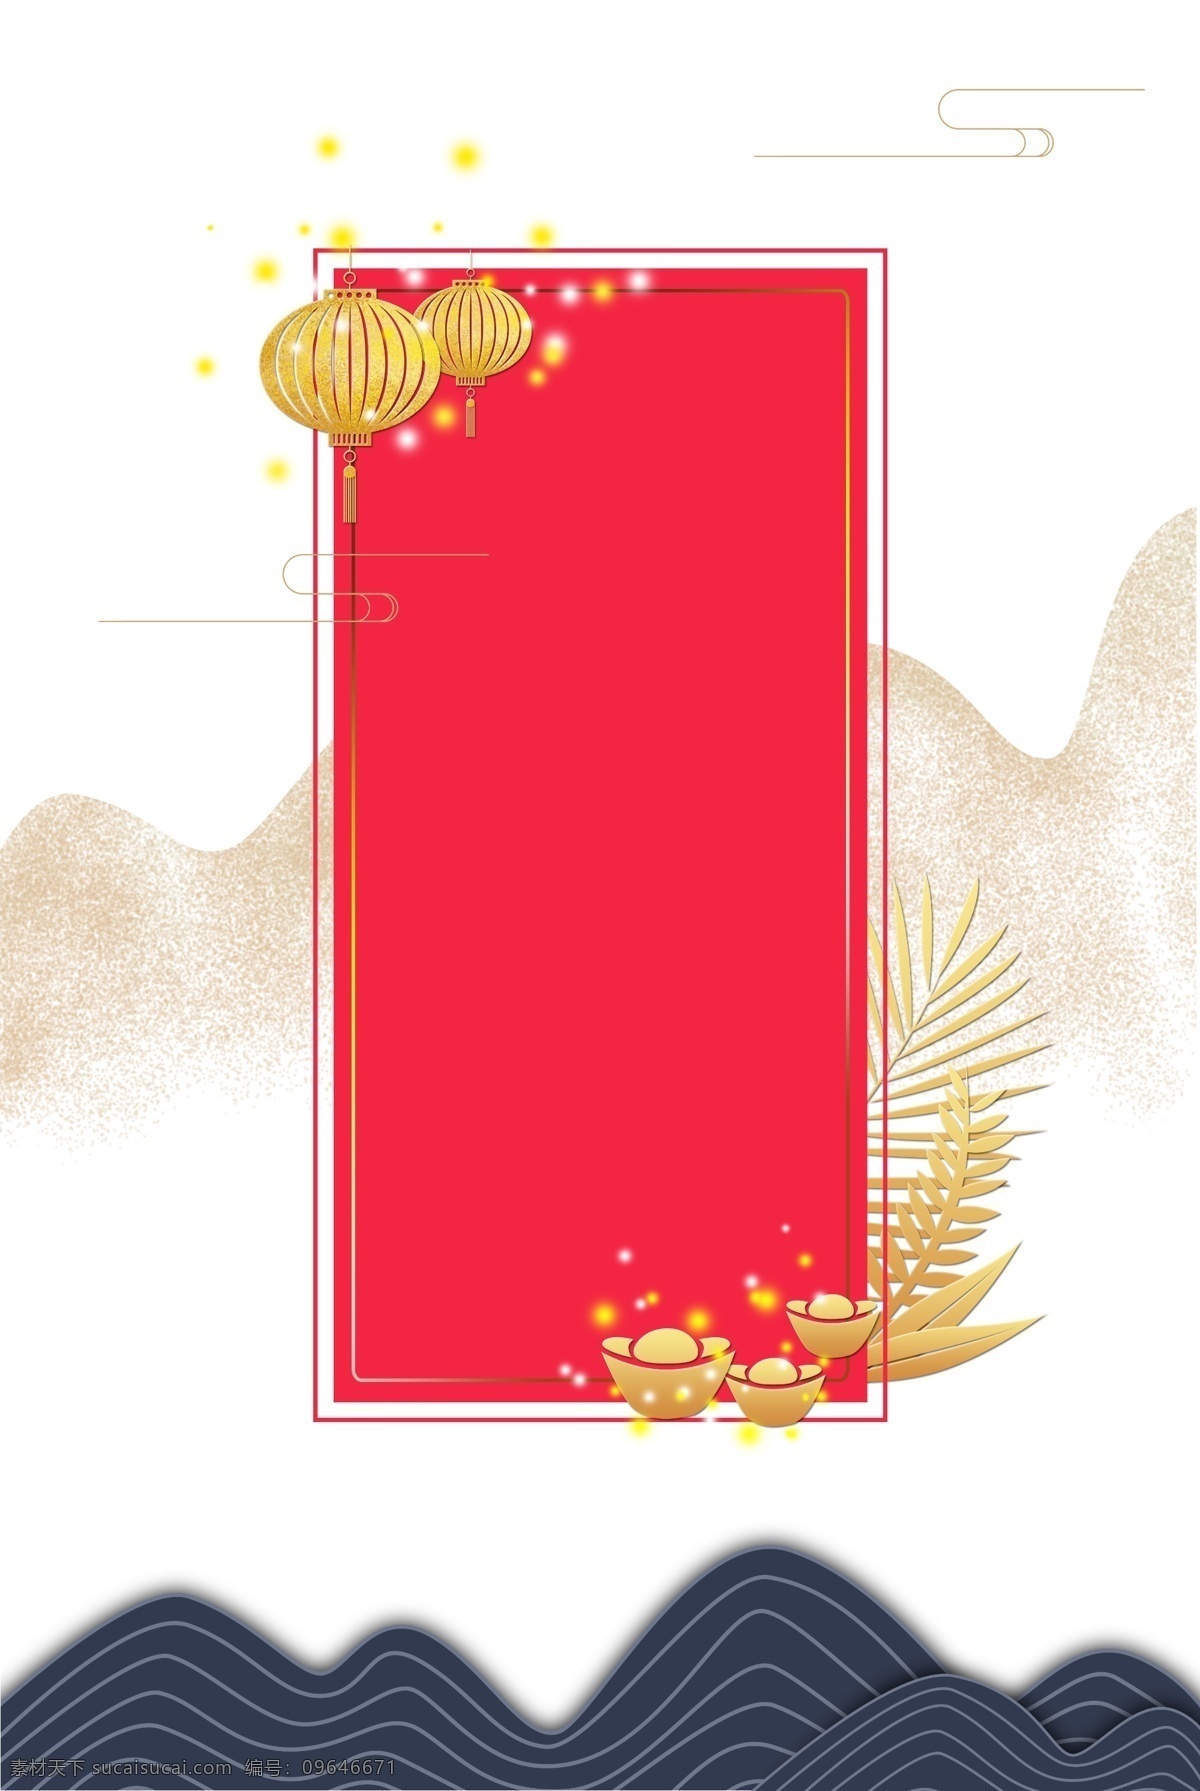 国风 节日 海报 边框 新年 春节 大年夜 2019年 猪年 传统节日 海报边框 海报装饰 中国风 中式 矢量 红色 金色